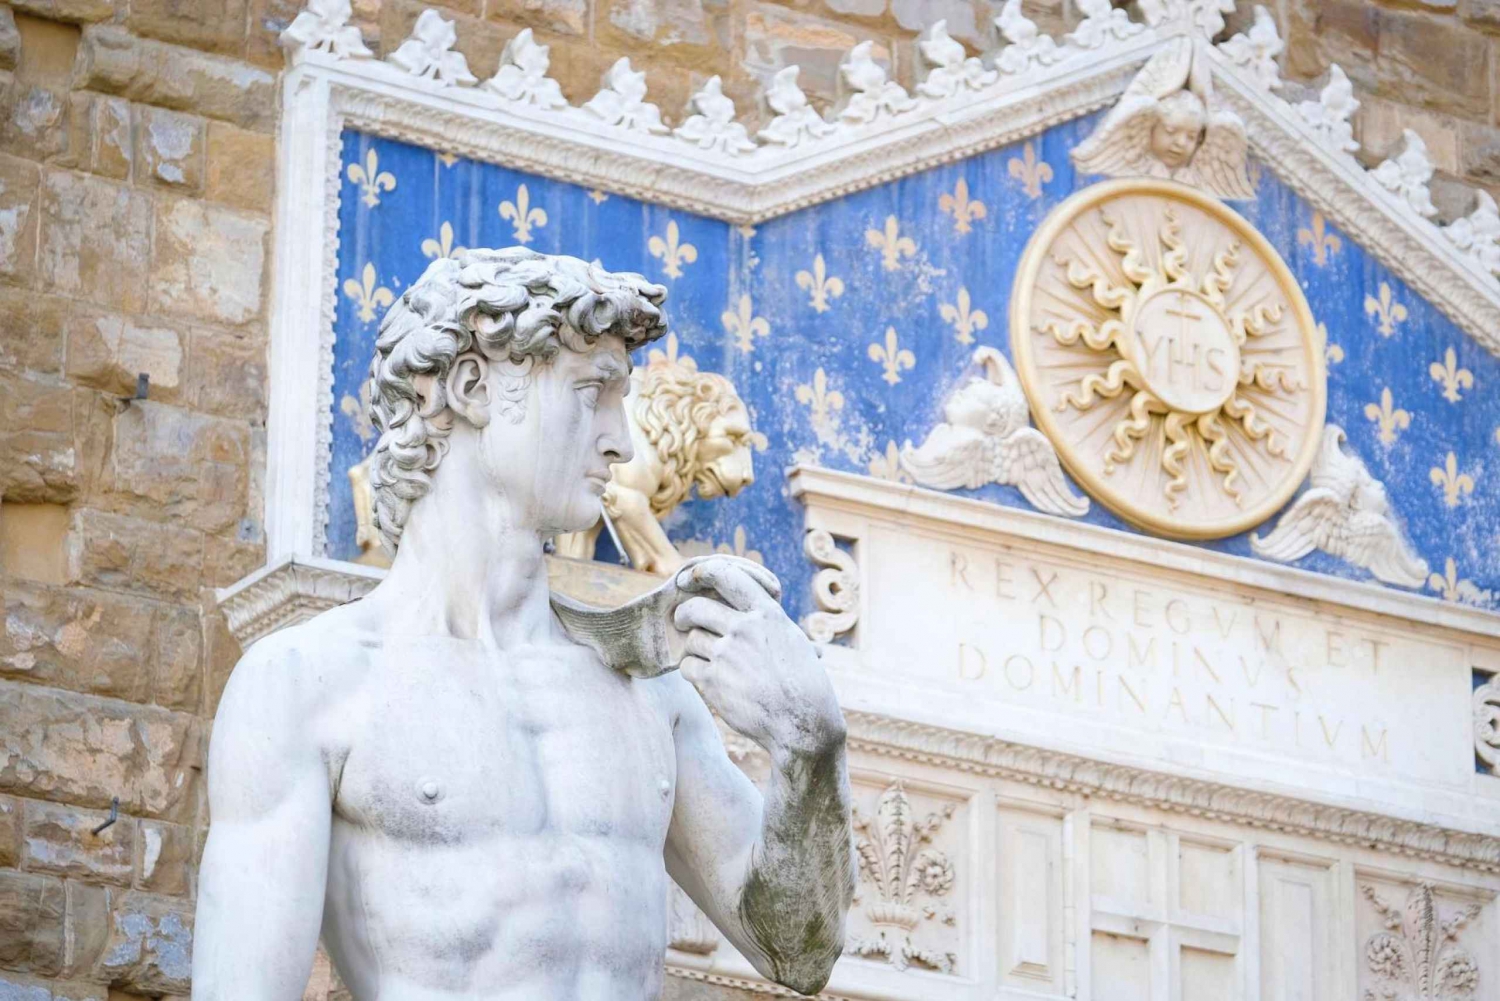 Galeria Uffizi, centro histórico e tour privado sem filas no Duomo